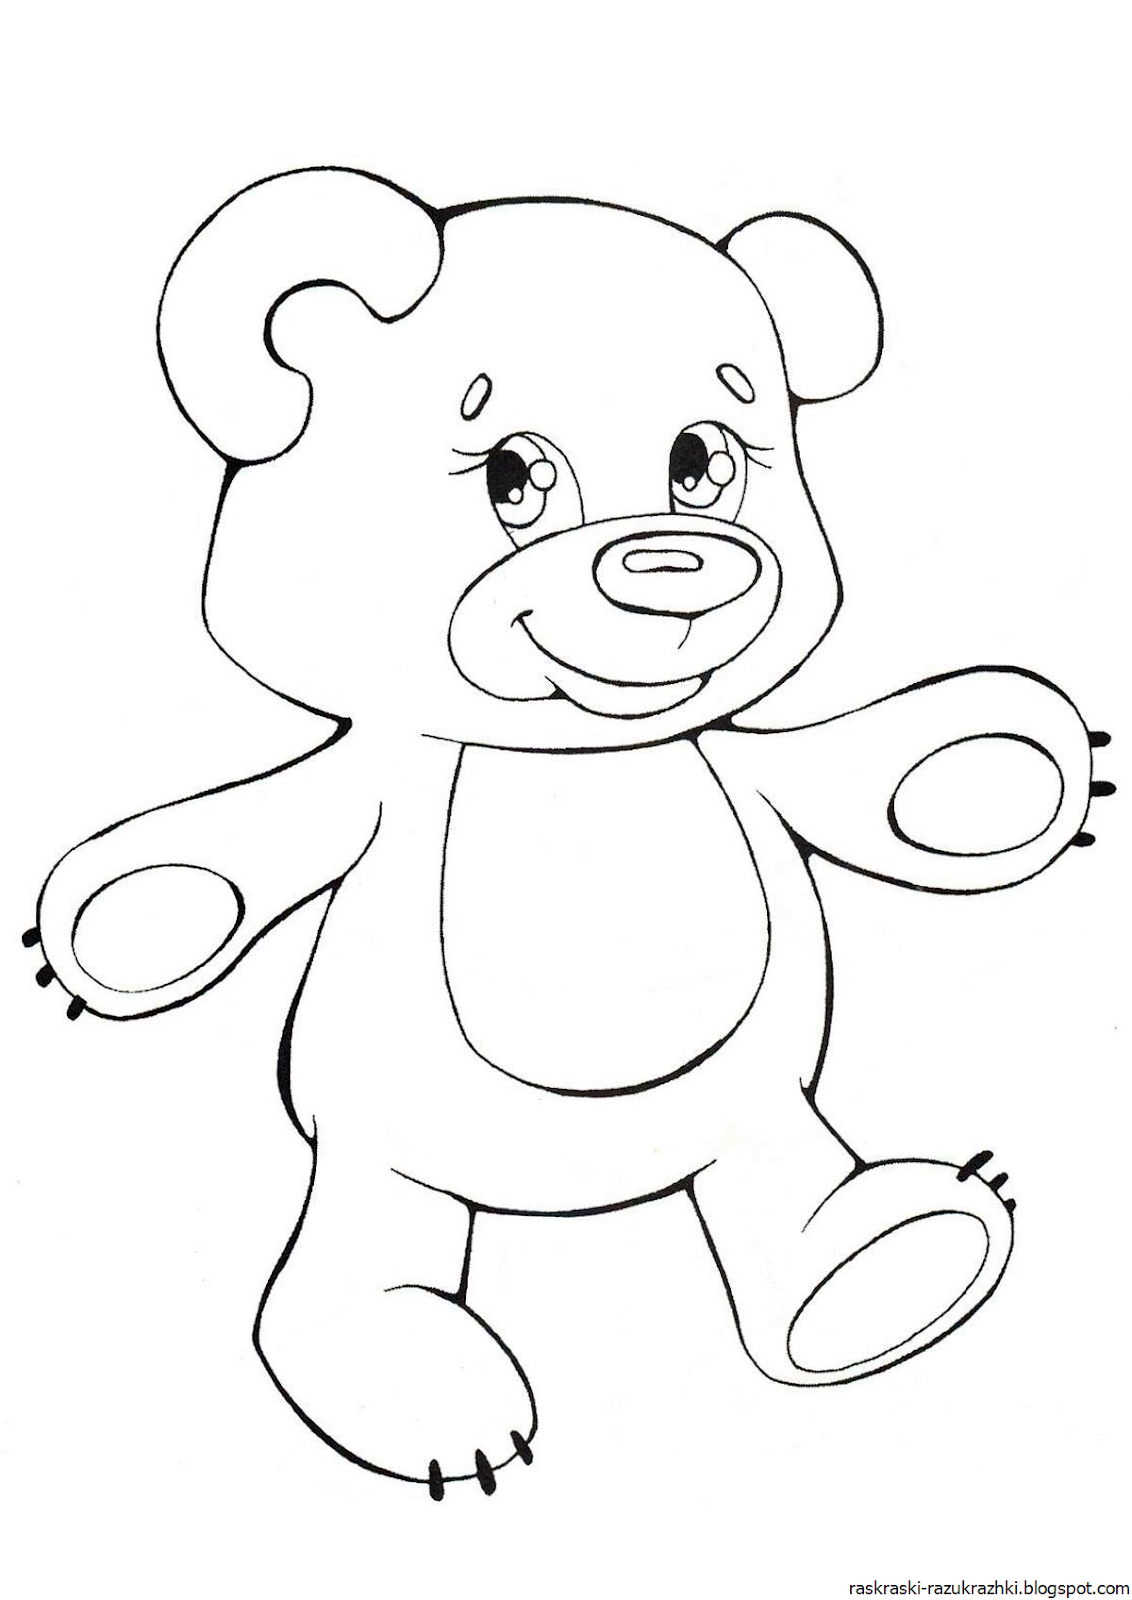 Раскраска медведь для детей 2 3 лет. Раскраска. Медвежонок. Медвежонок раскраска для детей. Раскраска "мишки". Медведь раскраска для детей.